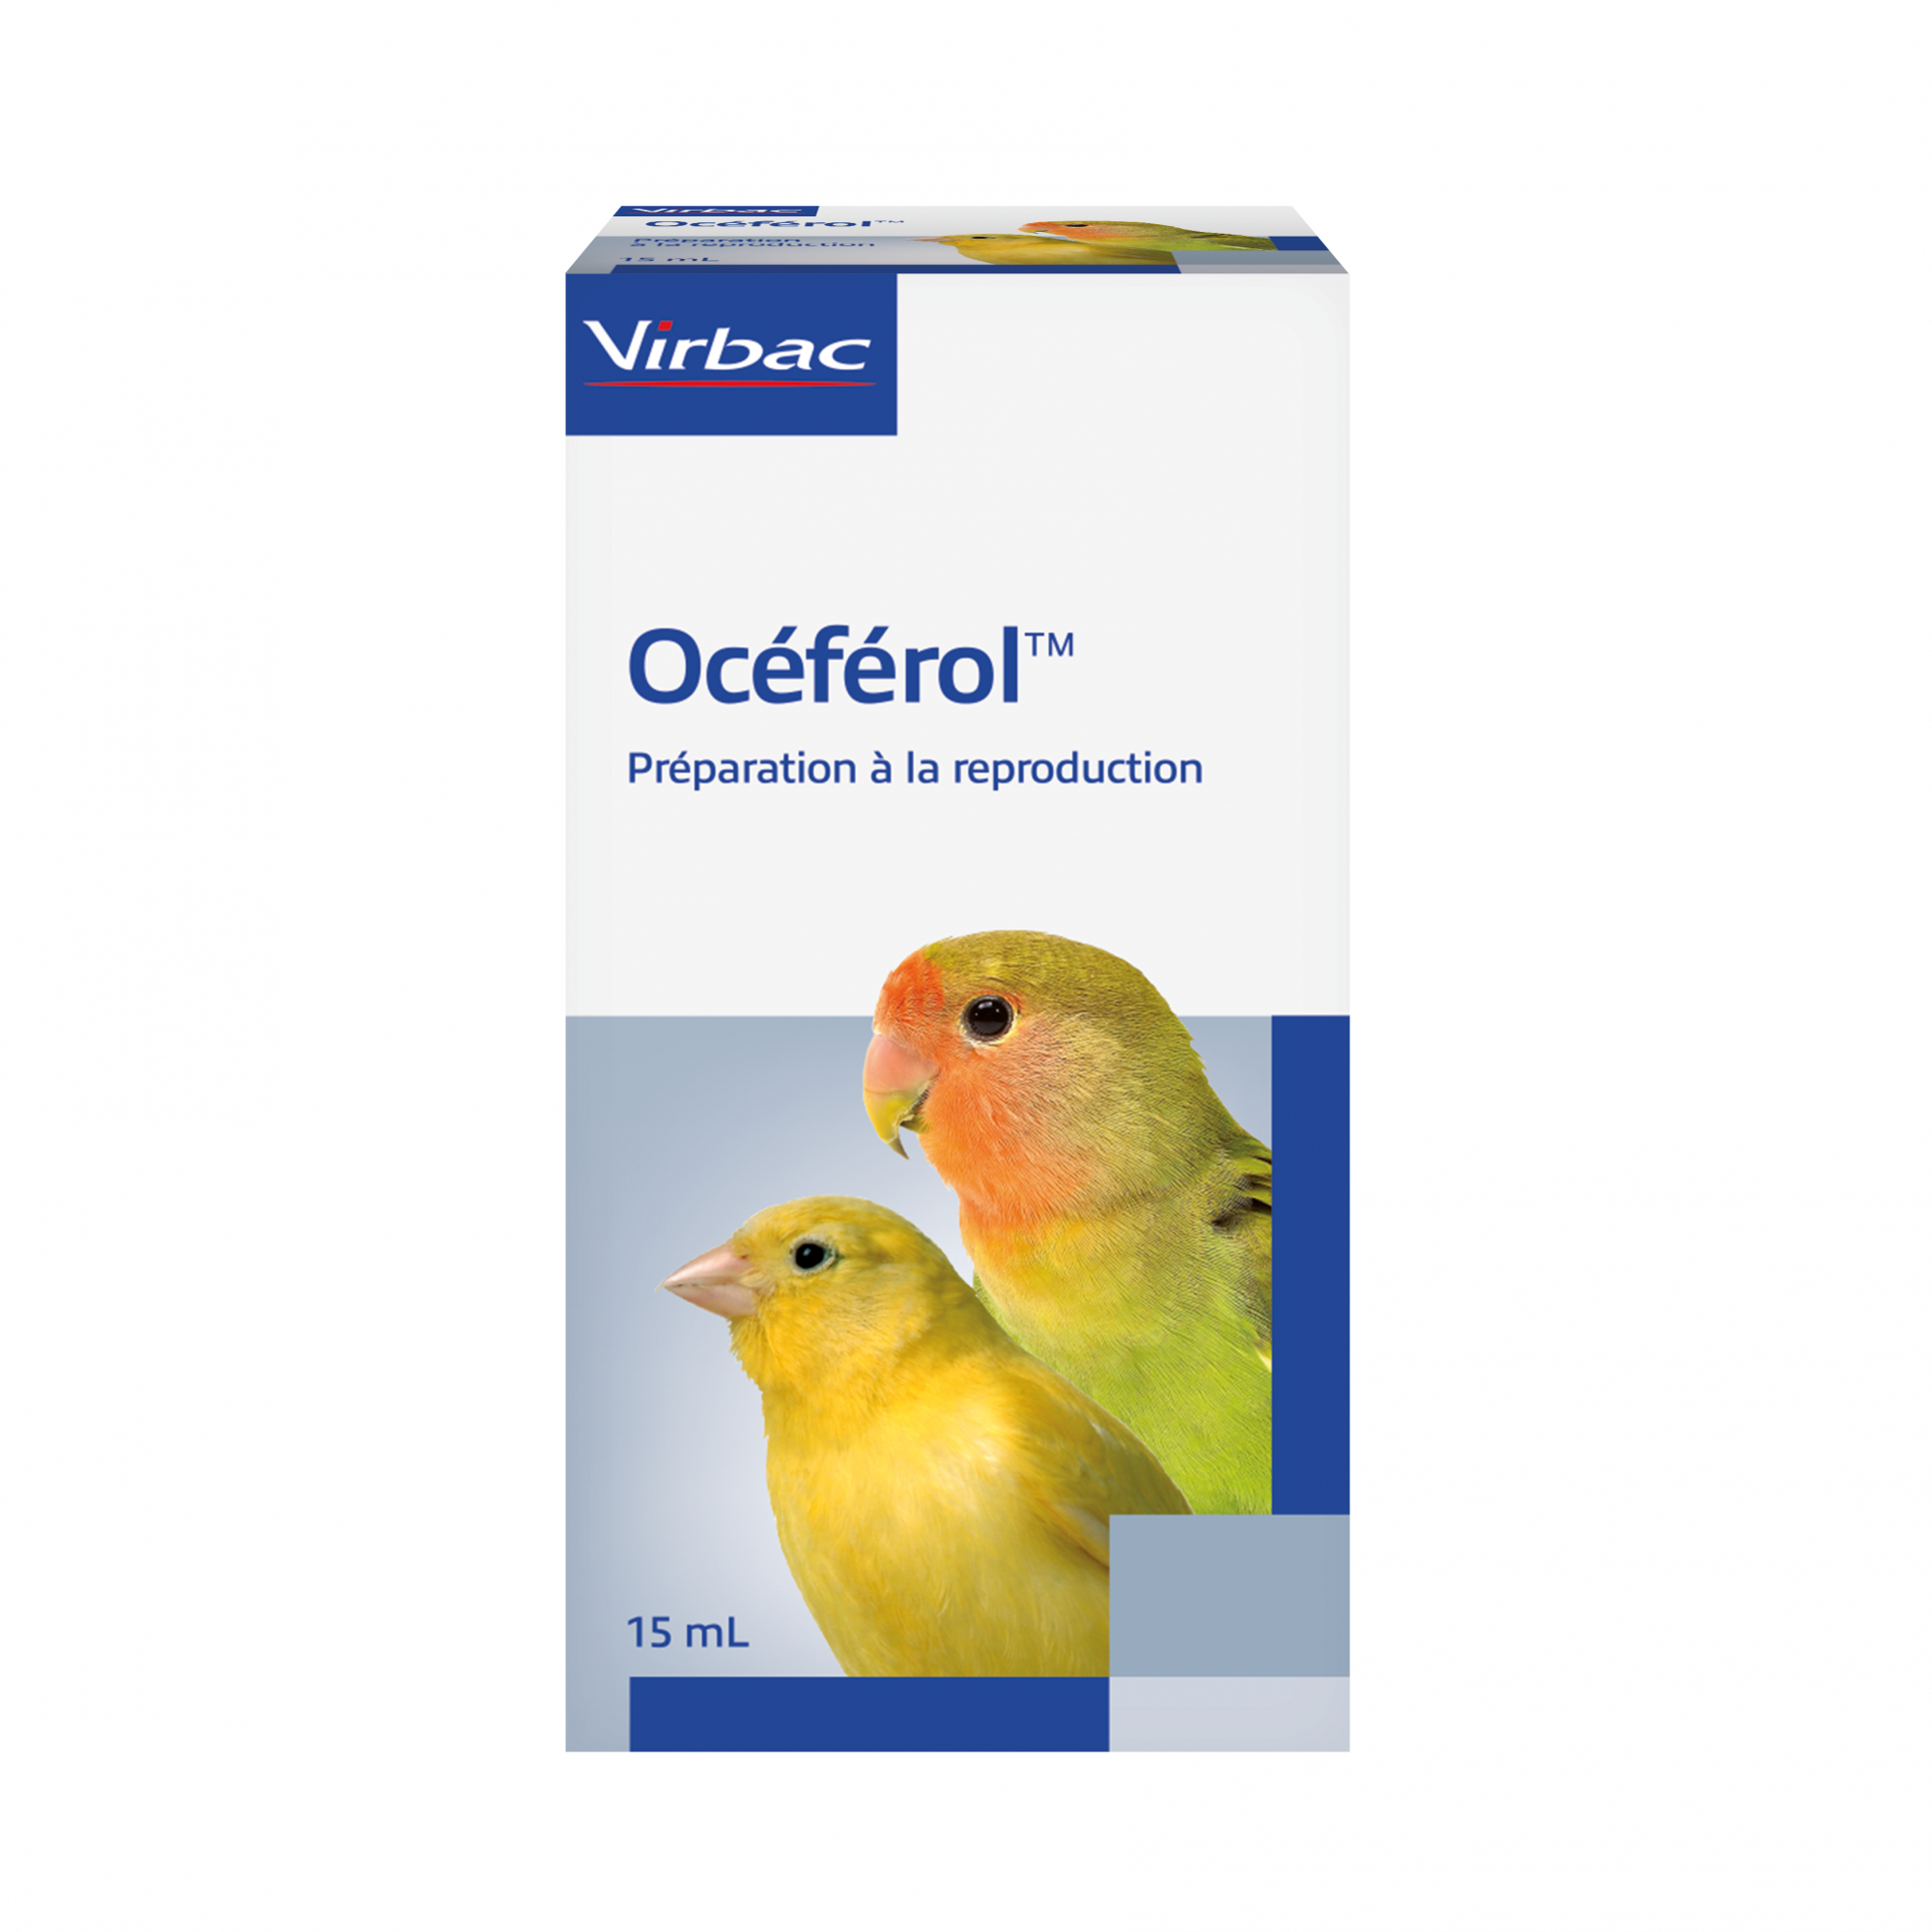 Virbac Oceferol Vitamine E voor het kweken van vogels